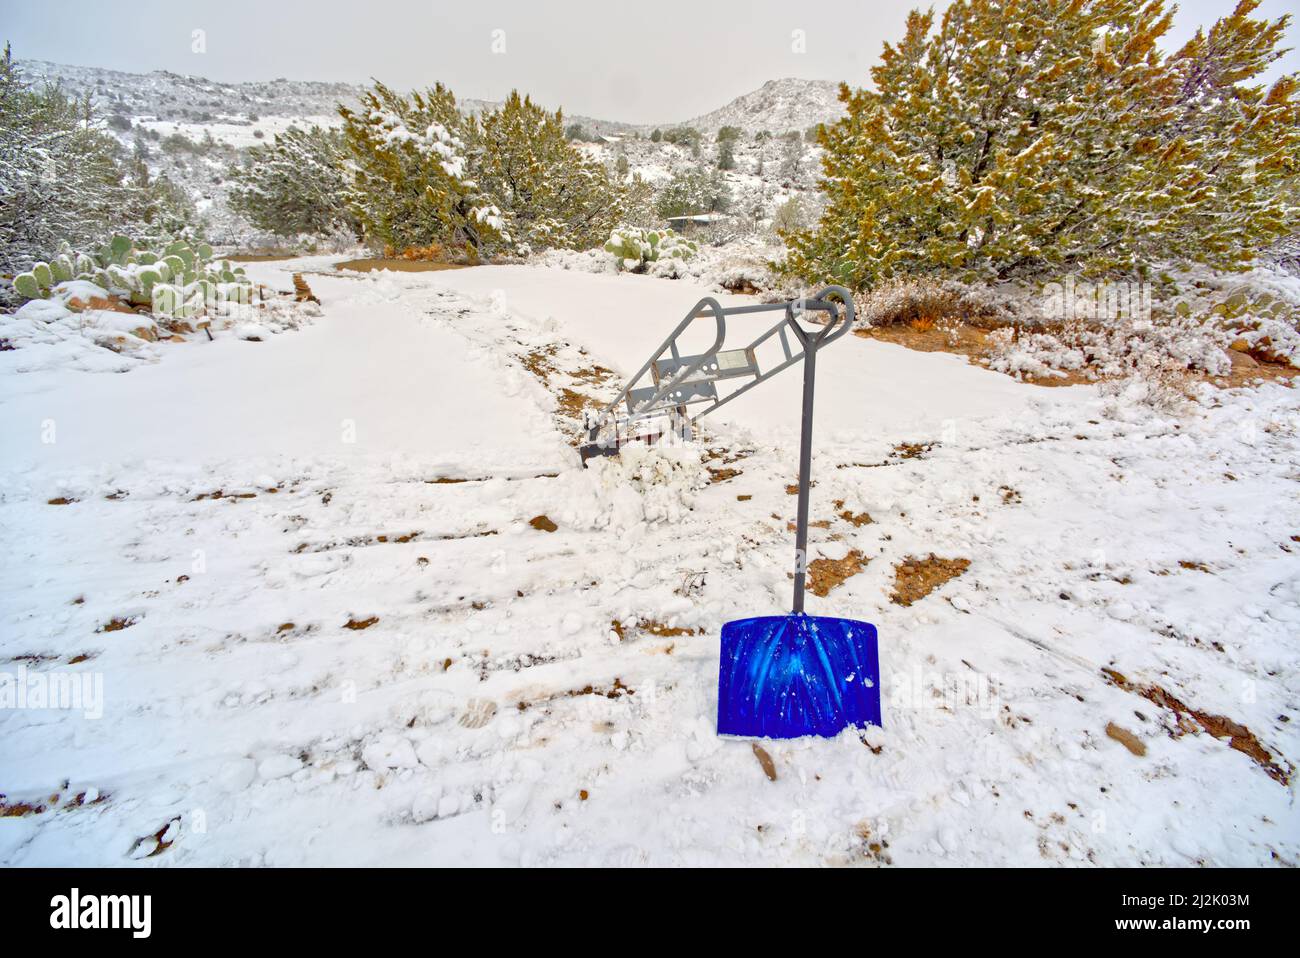 Pala y plataforma de electrodoméstico en la nieve, Chino Valley, Arizona, EE.UU Foto de stock